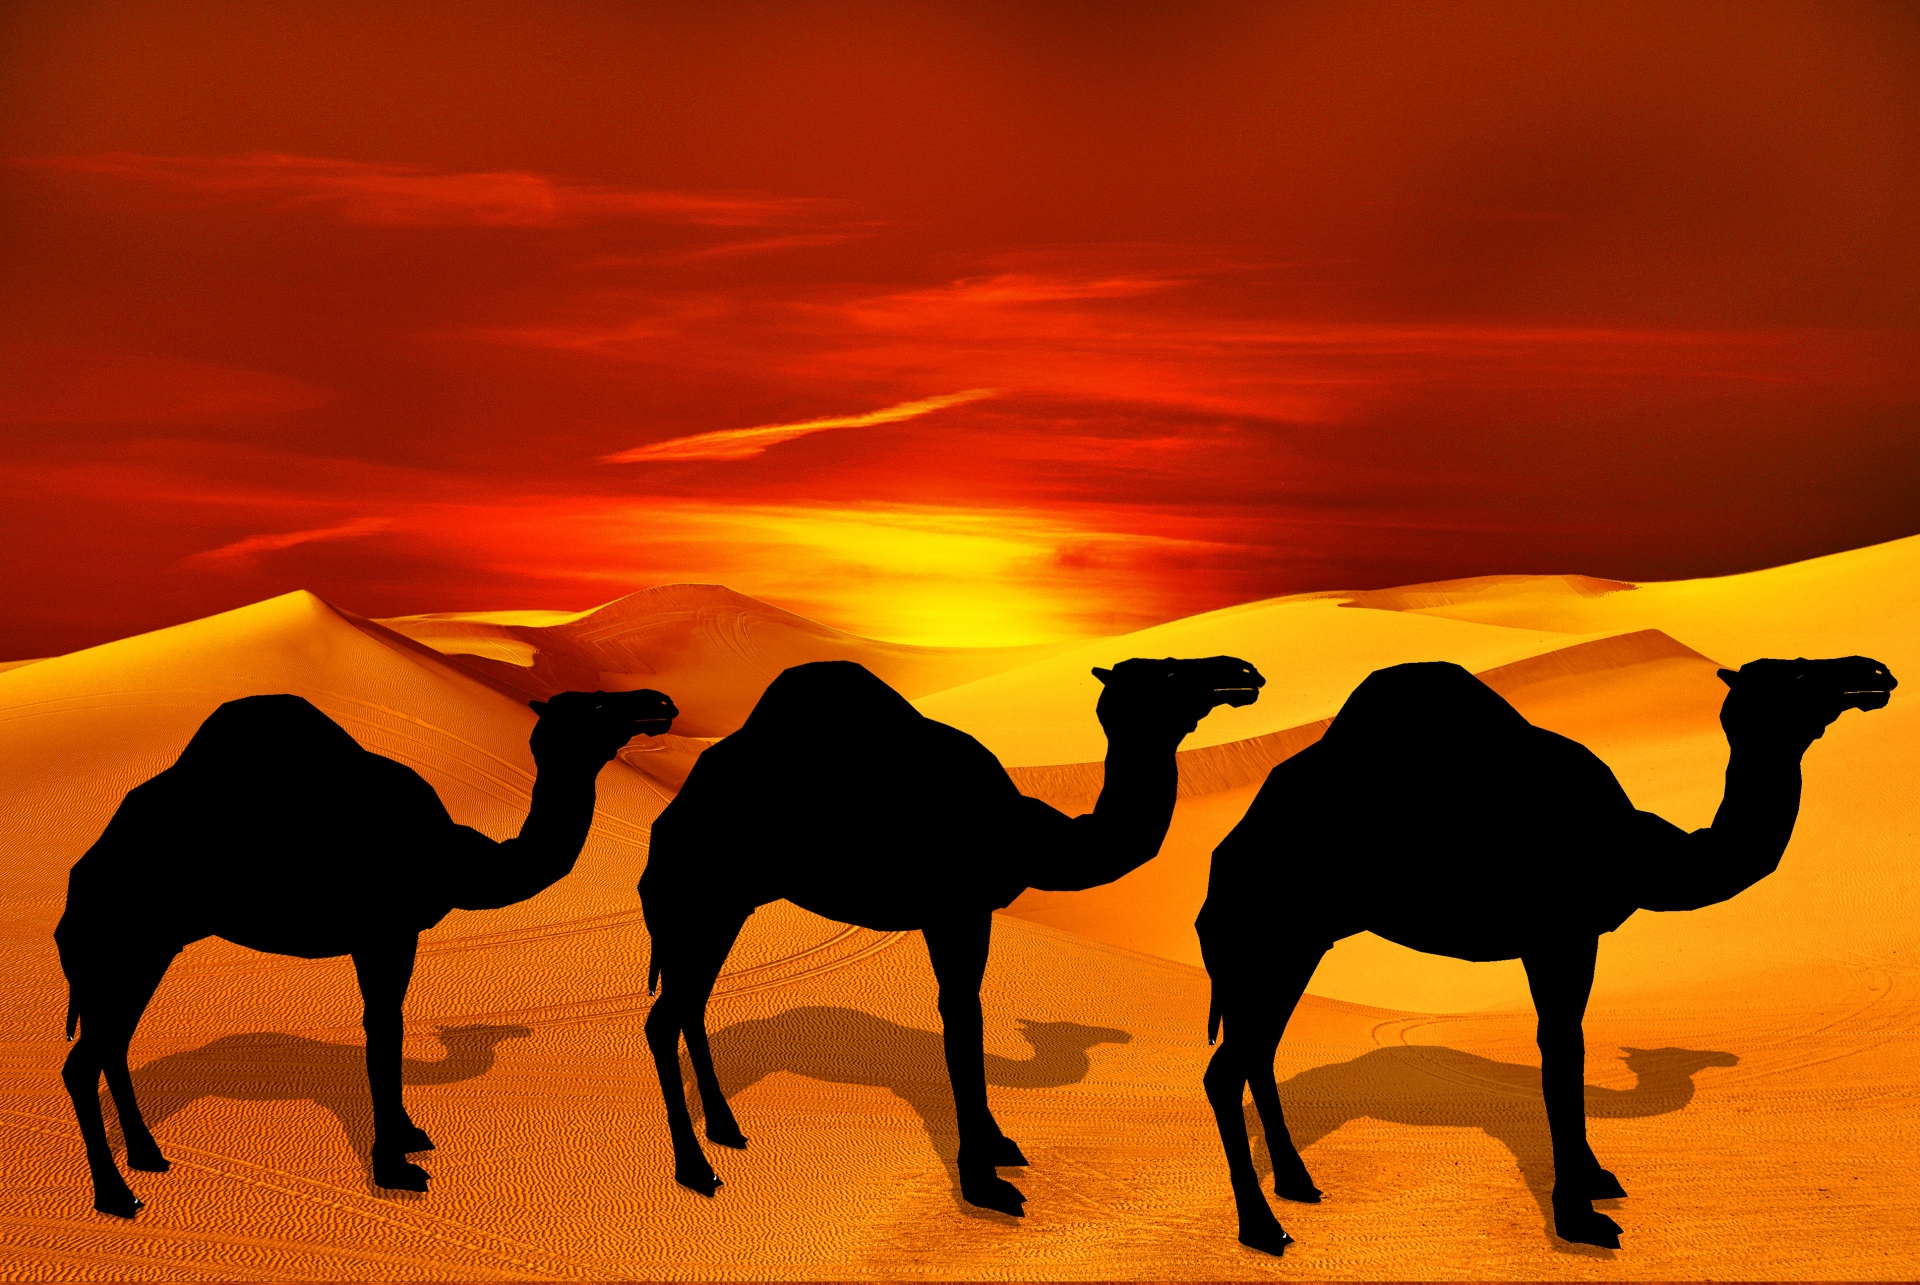 Camel In The Desert